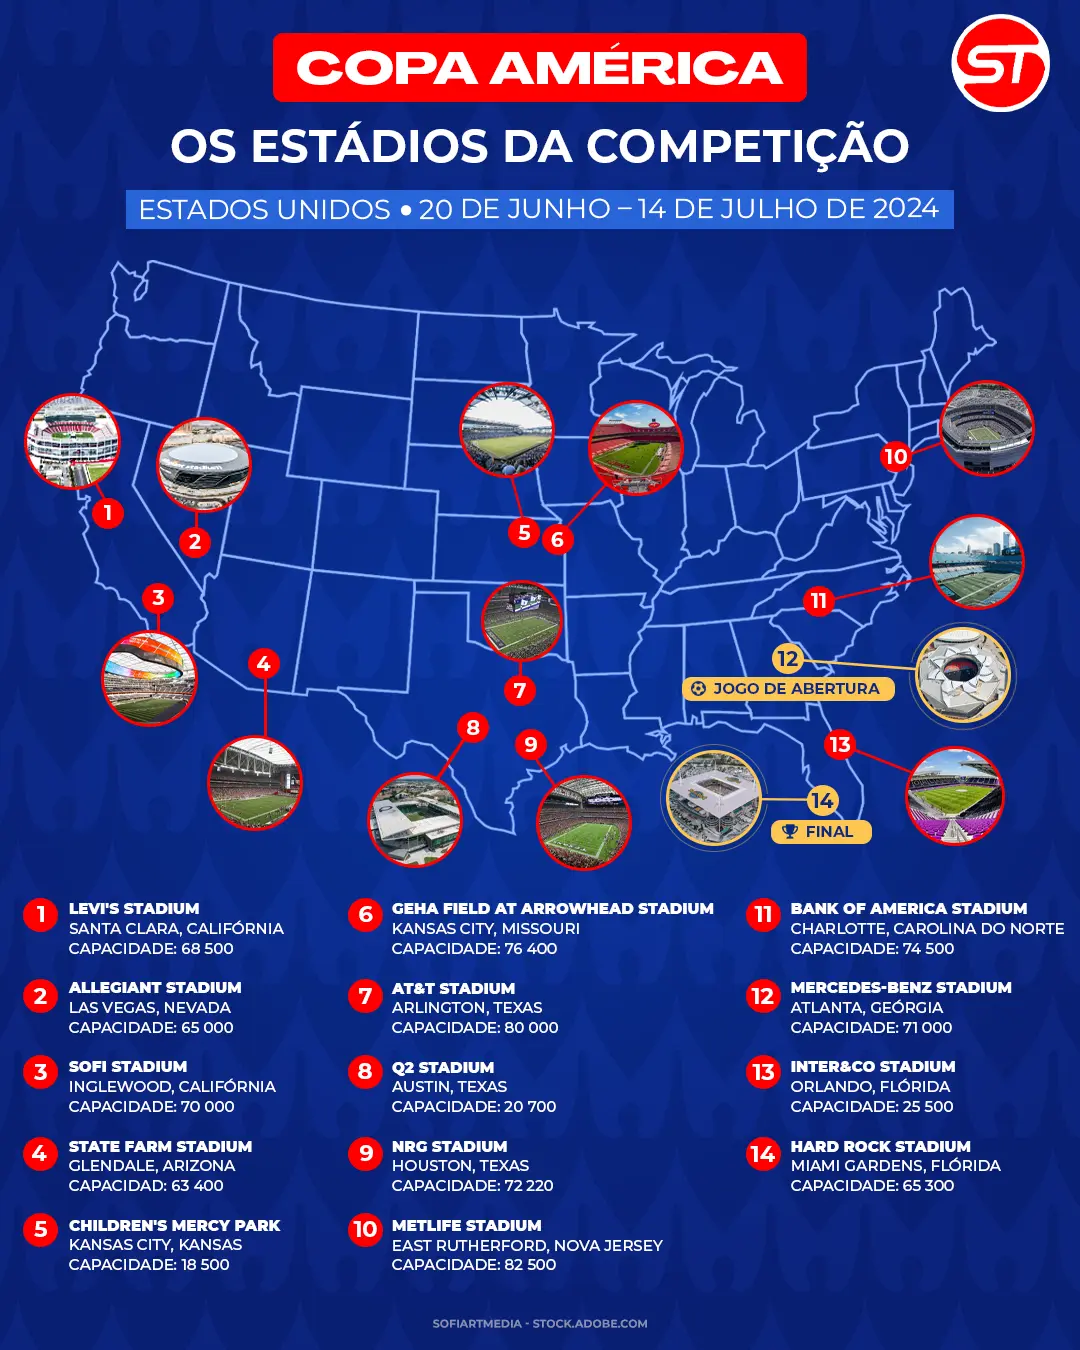 Estádios da Copa América 2024 nos Estados Unidos: onde vão acontecer as suas apostas desportivas online?